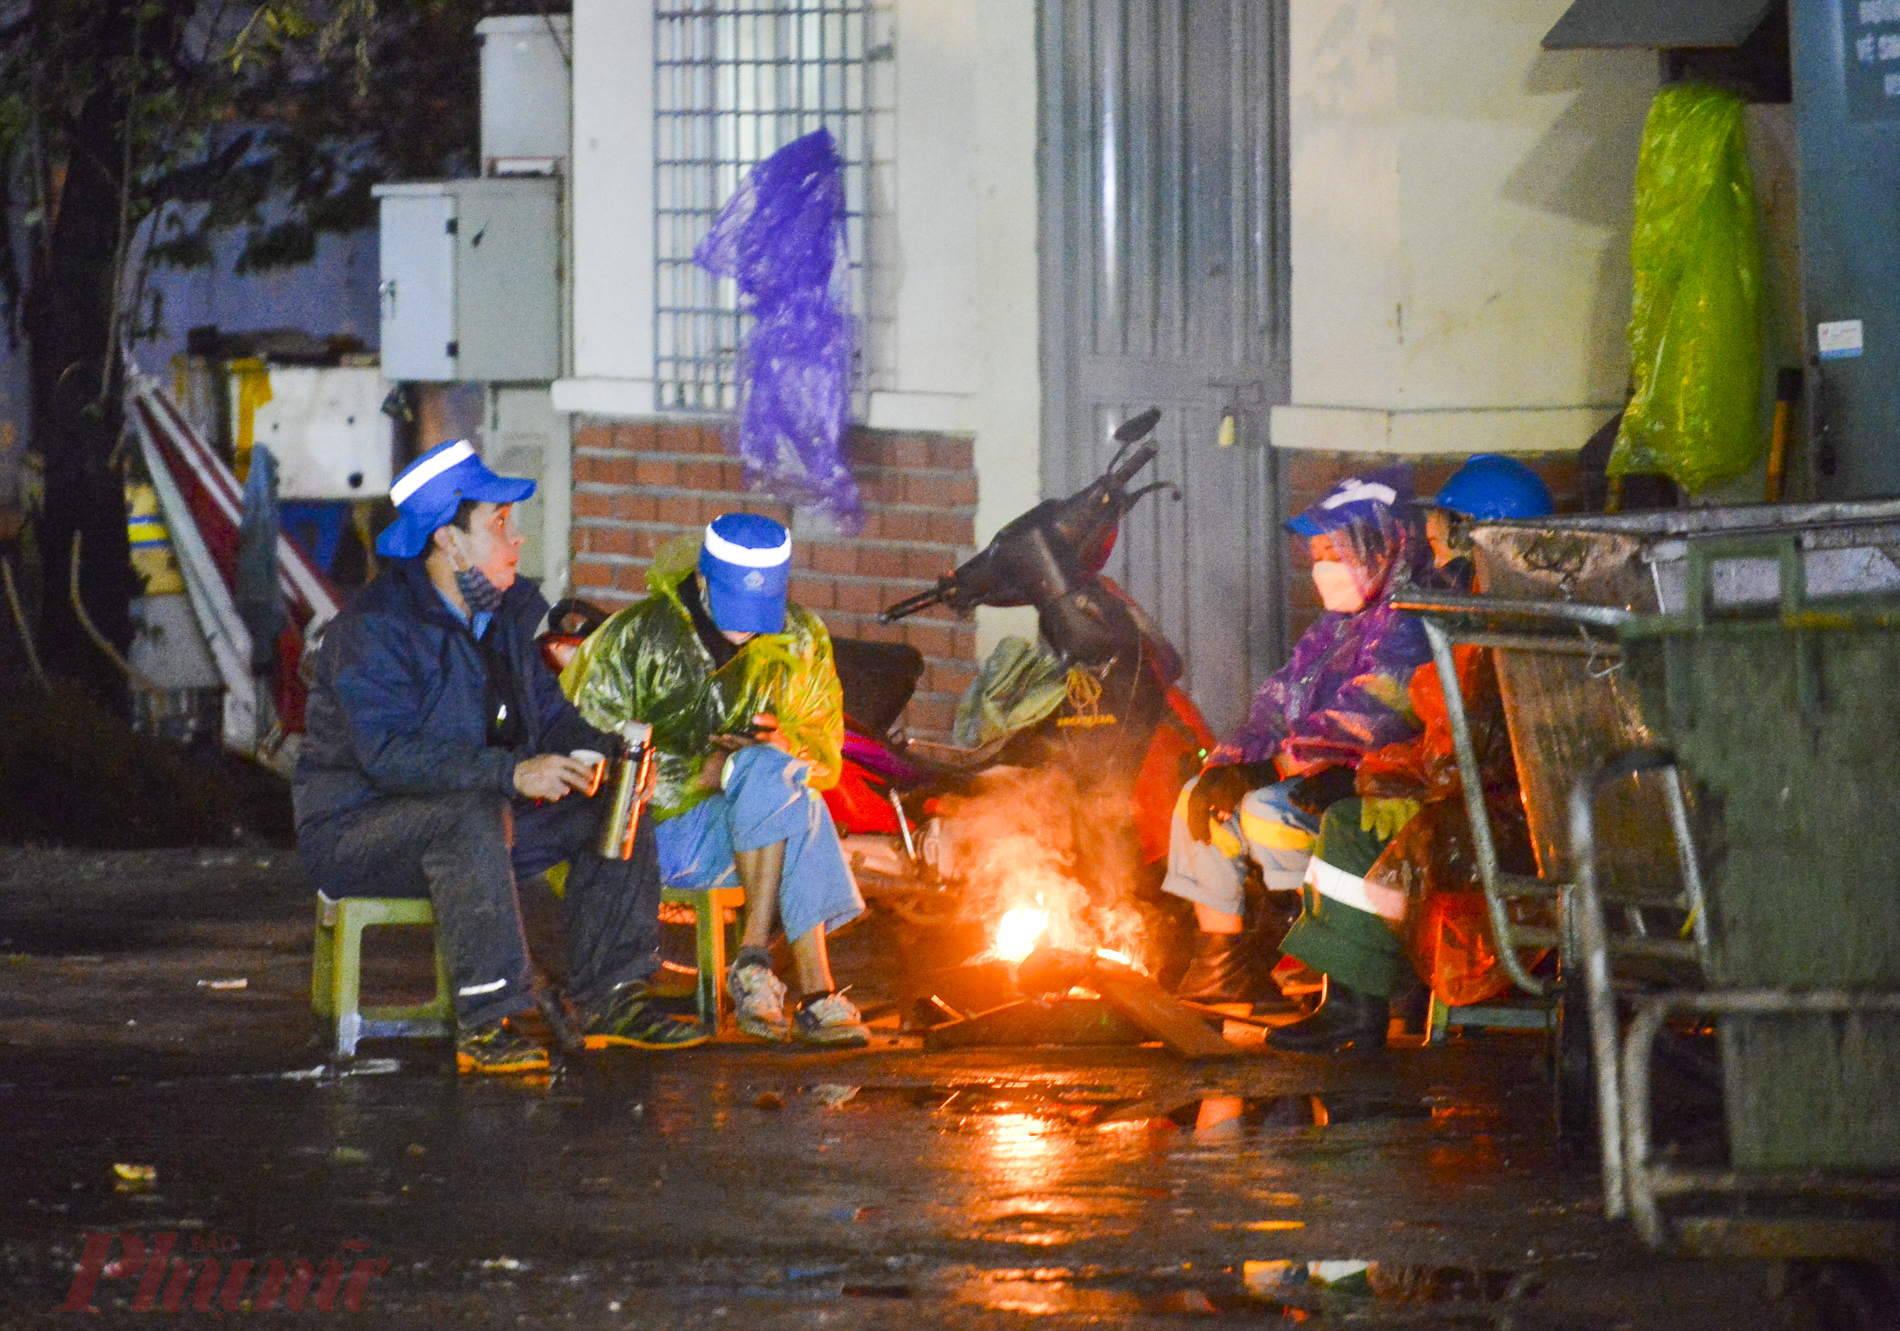 Một thoáng nghỉ ngơi bên cạnh đống lửa nhỏ của những người công nhân vệ sinh môi trường trên phố Hào Nam. Dưới cái rét cắt da, cắt thịt, những công nhân này cho biết, nếu không đốt lửa thì không thể ngồi nghỉ được.